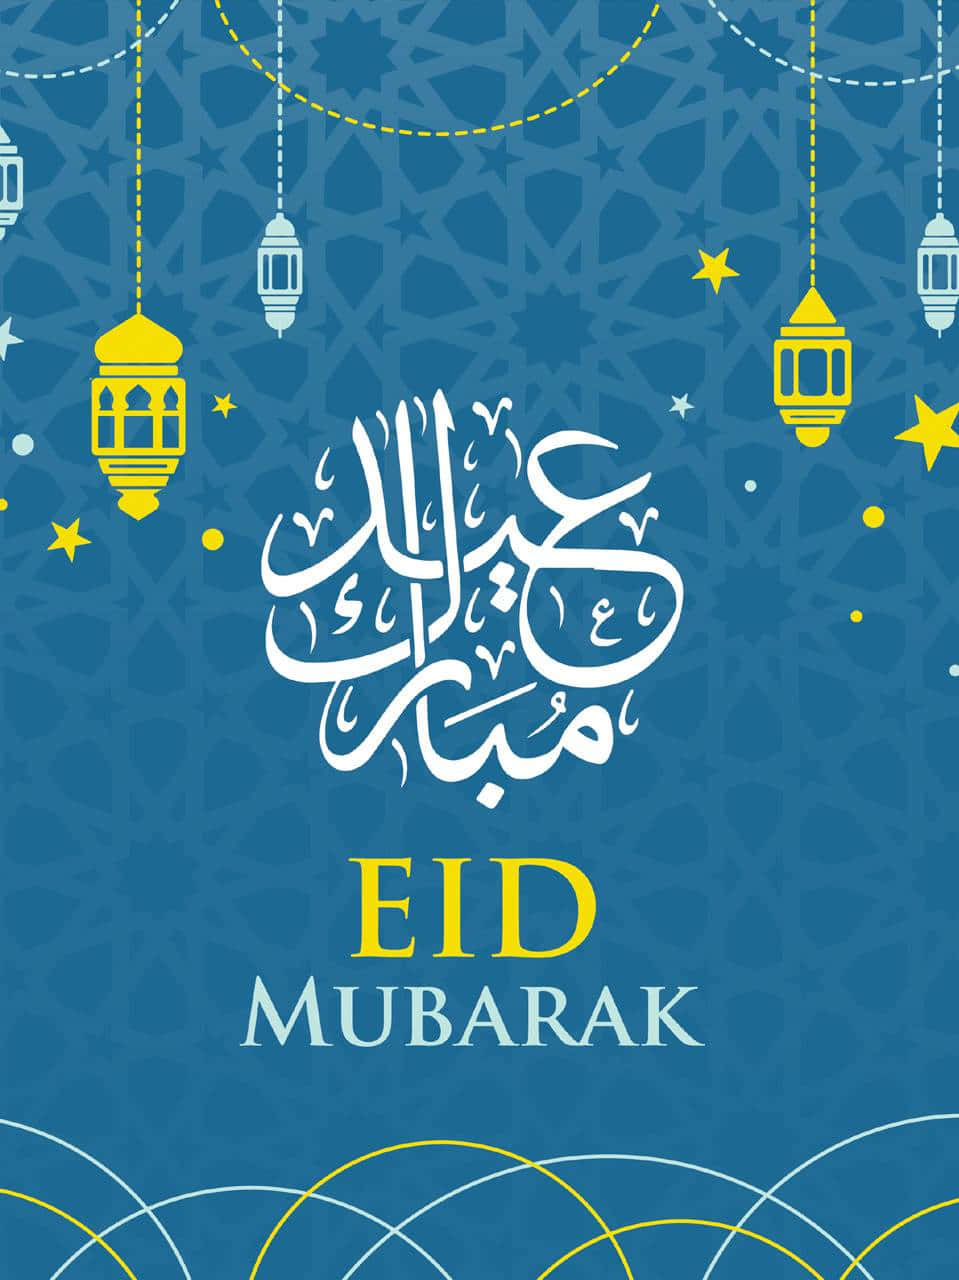 Tarjetade Felicitación De Eid Mubarak Con Caligrafía Islámica.